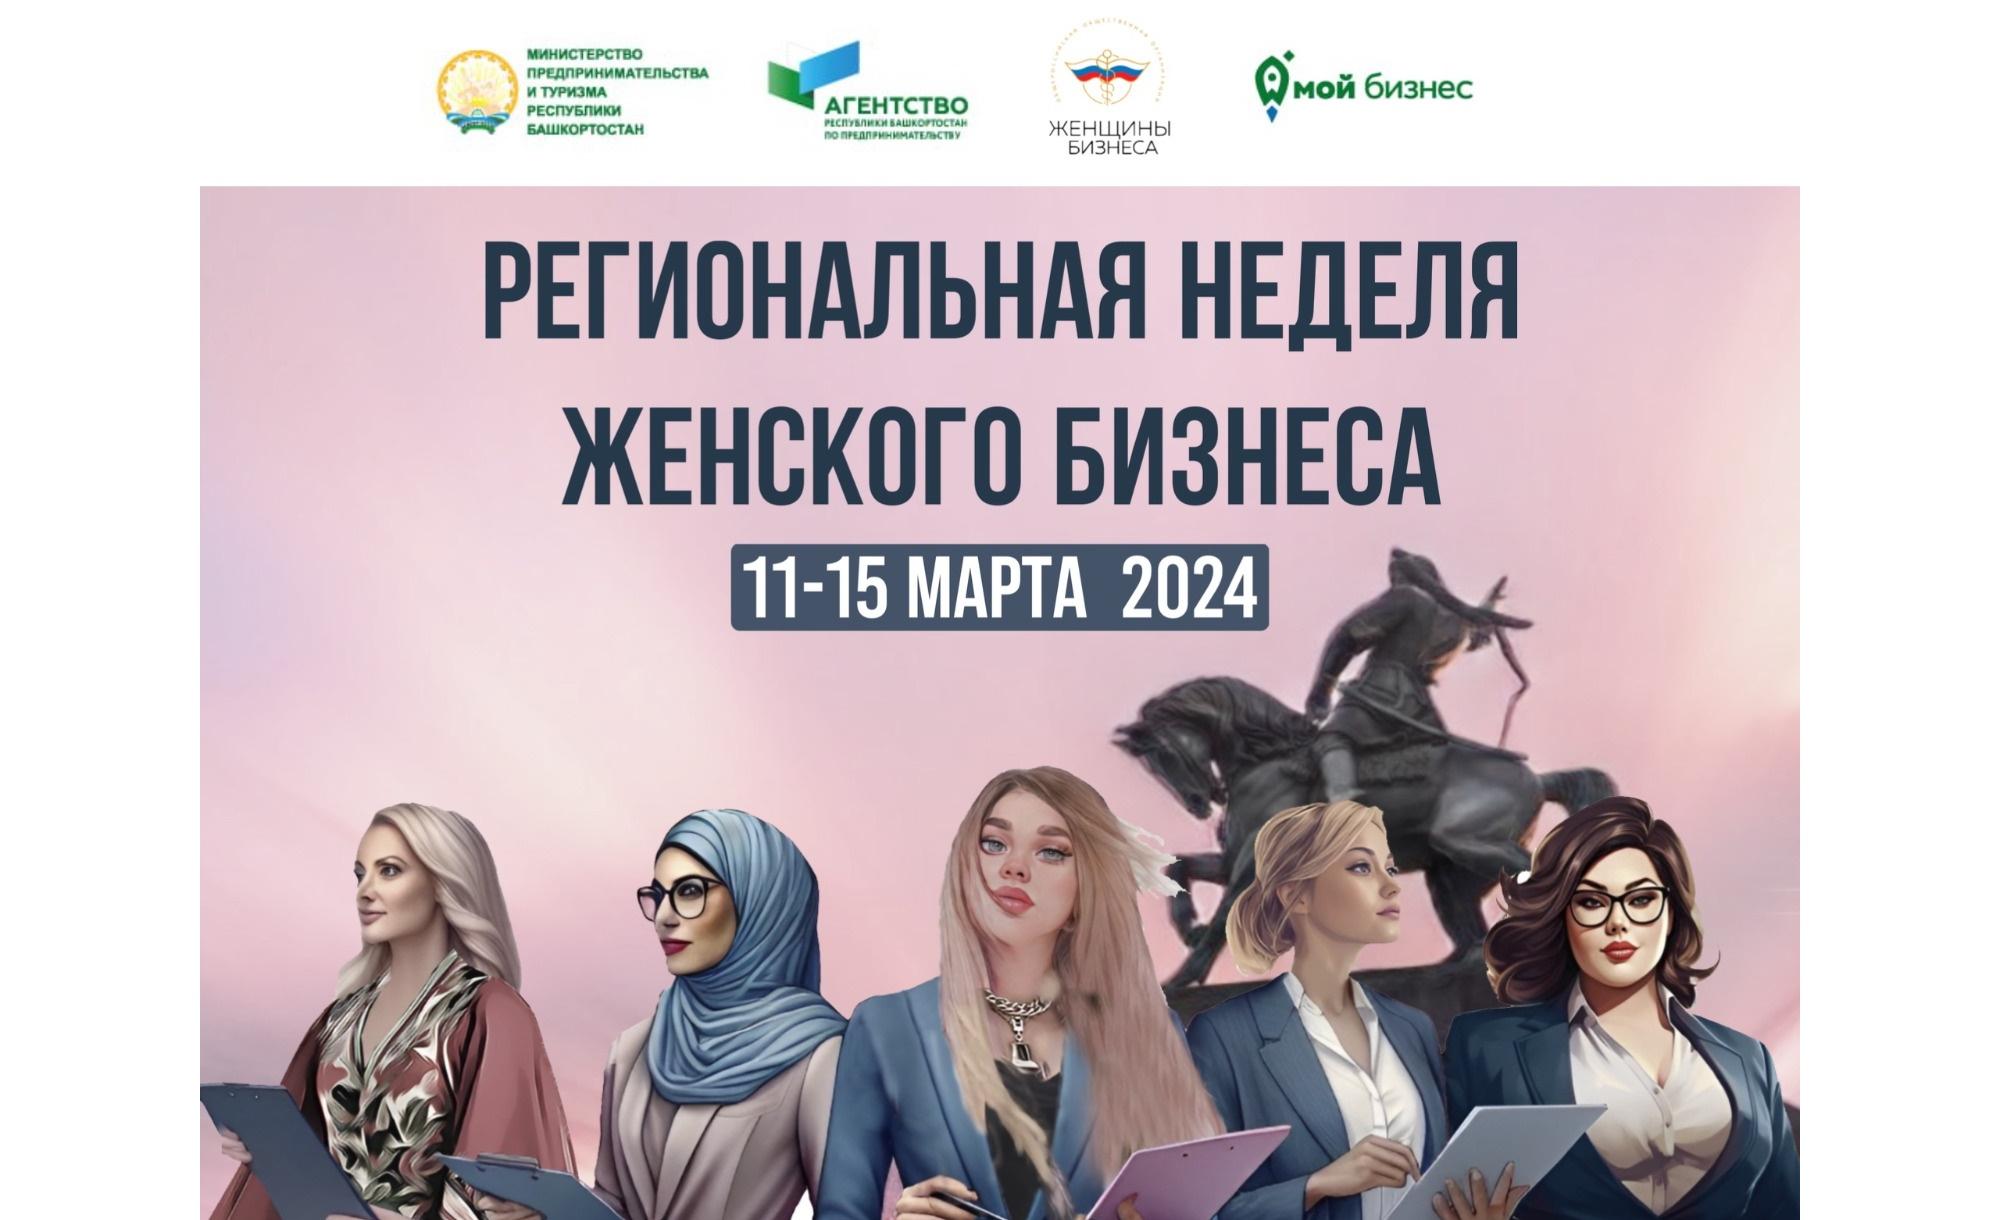 Приглашаем принять участие в Региональной неделе женского бизнеса в Башкортостане